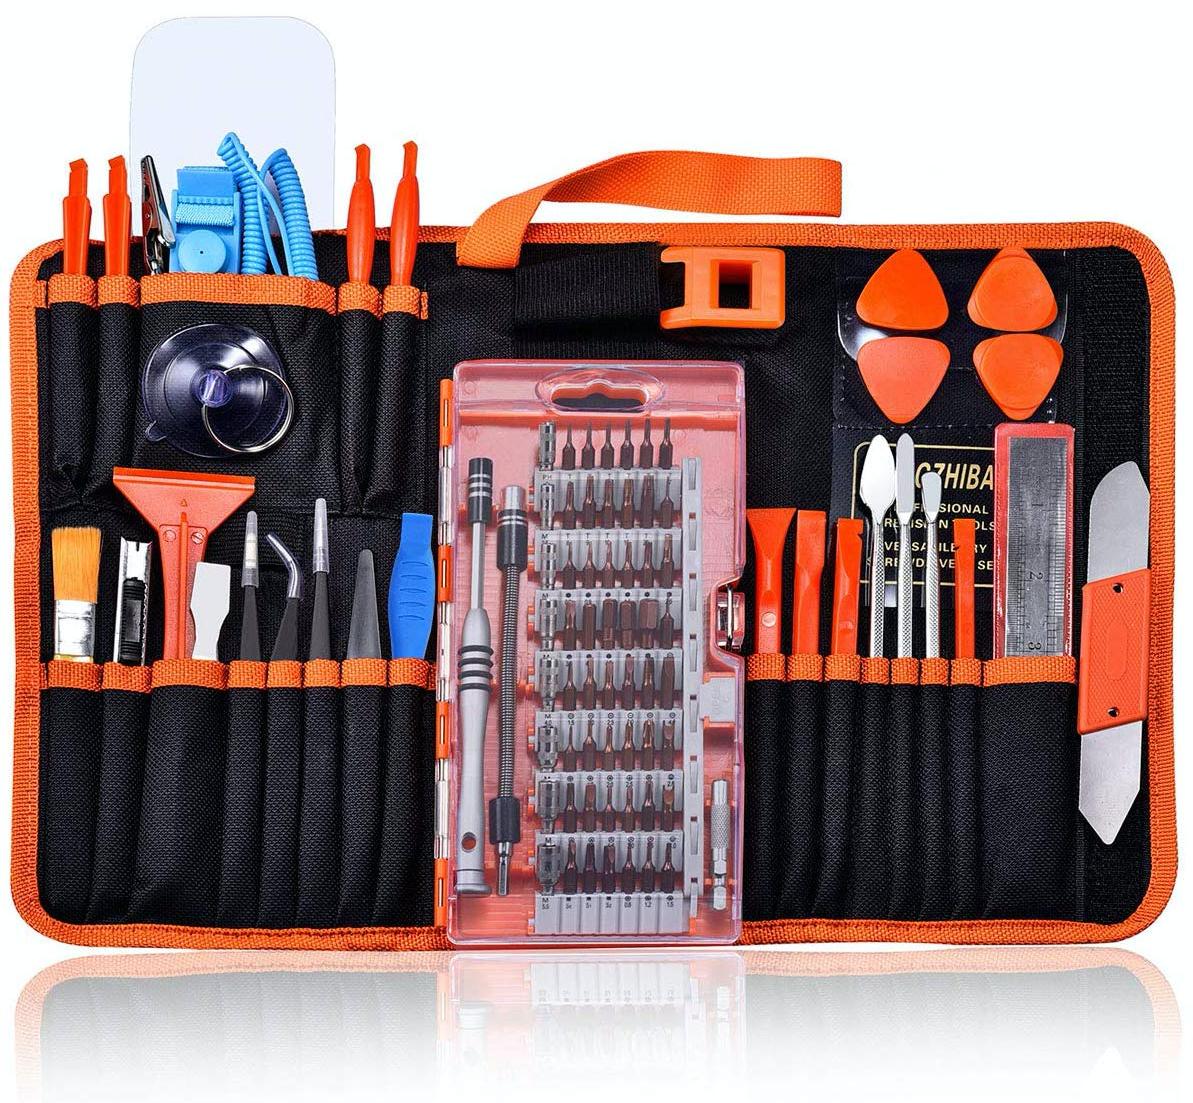 16in1 Mobile Phone Repair Tools Screwdrivers Set Kit For iPad4 iPhone 6 Plus _QA